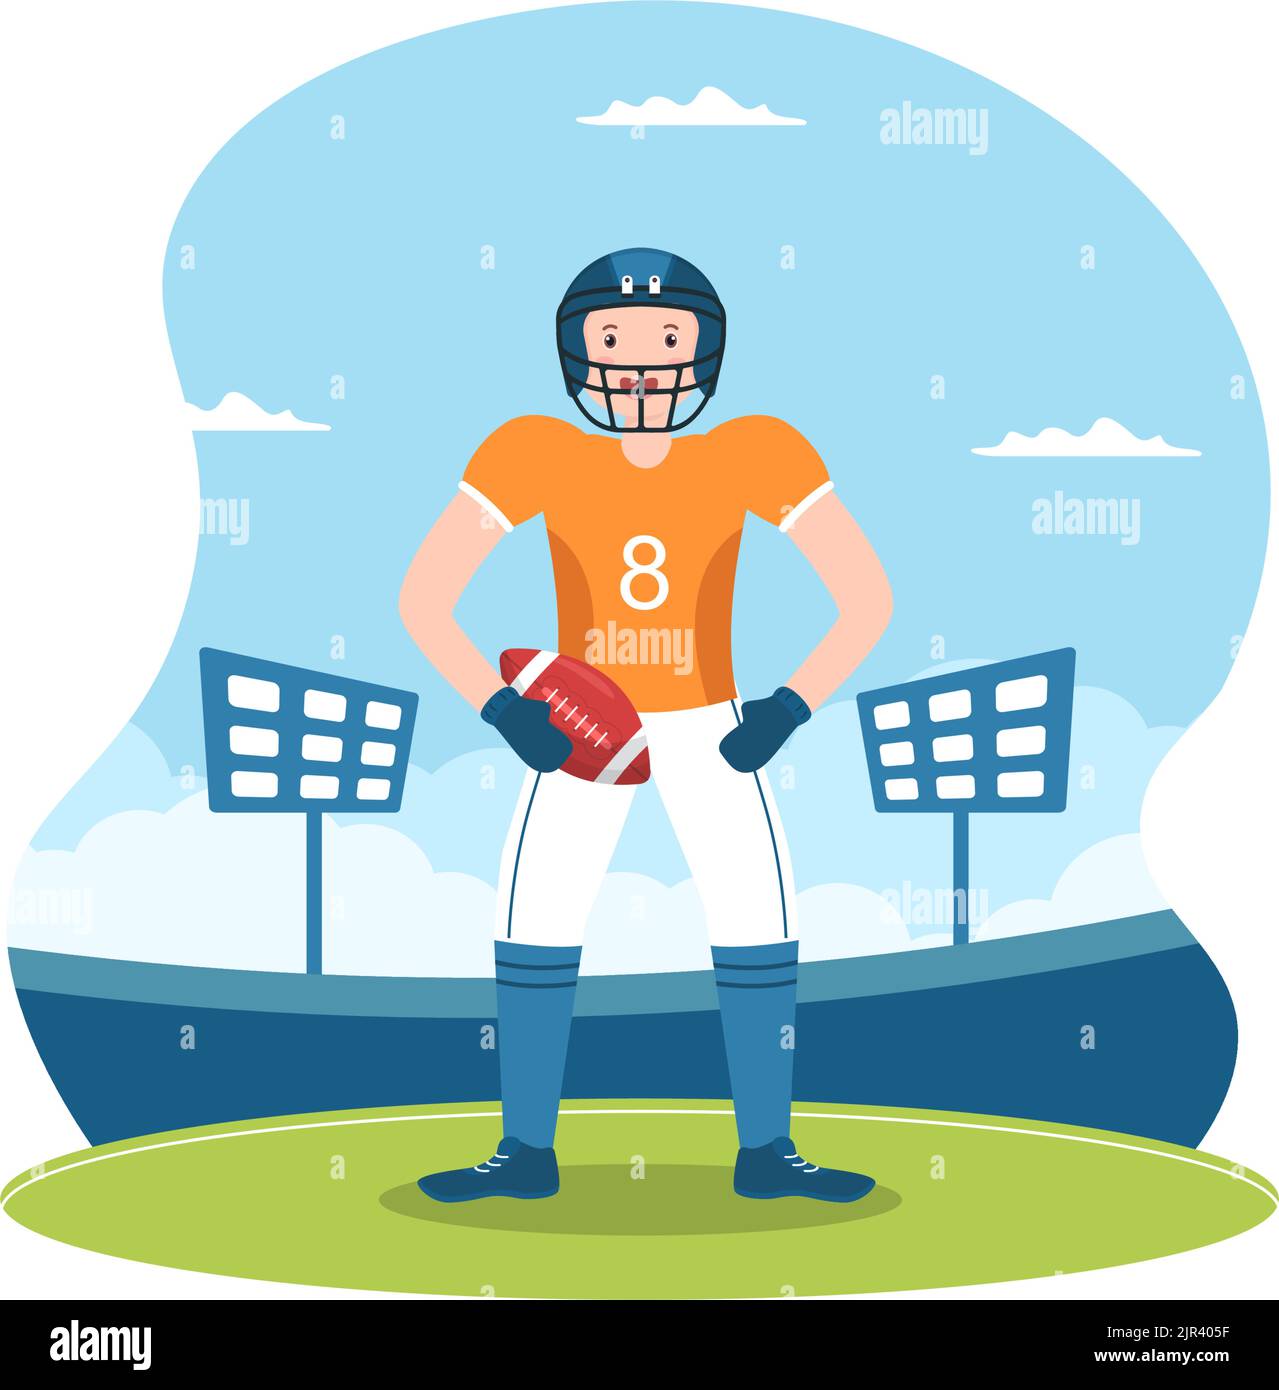 American Football Sports Player with the Game verwendet einen ovalen Ball und ist auf dem Feld von Hand gezeichnete Cartoon-flache Illustration braun Stock Vektor